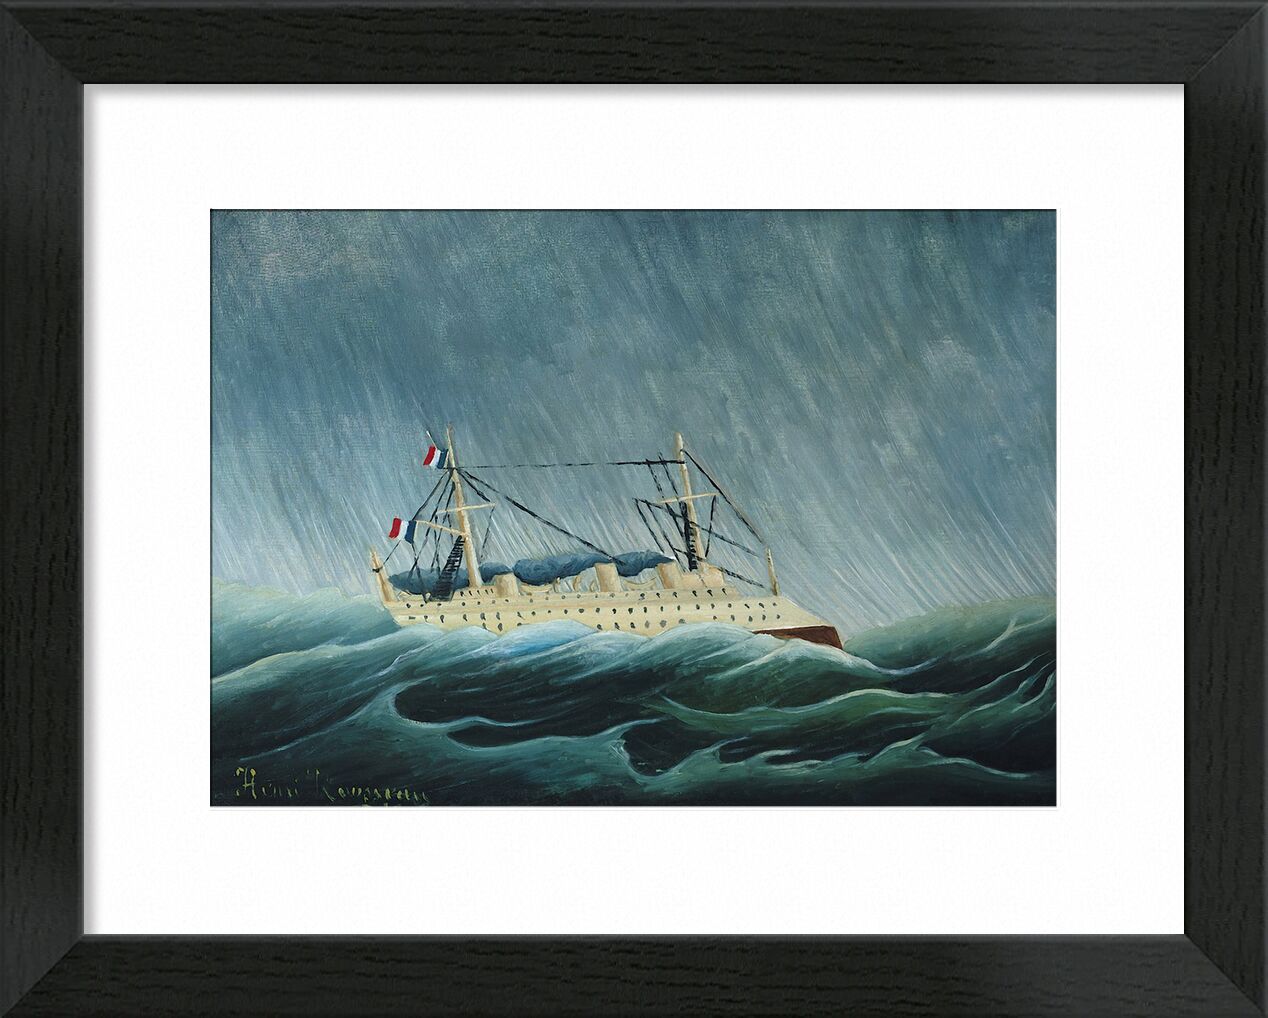 Das sturmgepeitschte Schiff von Bildende Kunst, Prodi Art, Schiff, Boot, Rousseau, Meer, Sturm, Regen, Hurrikan